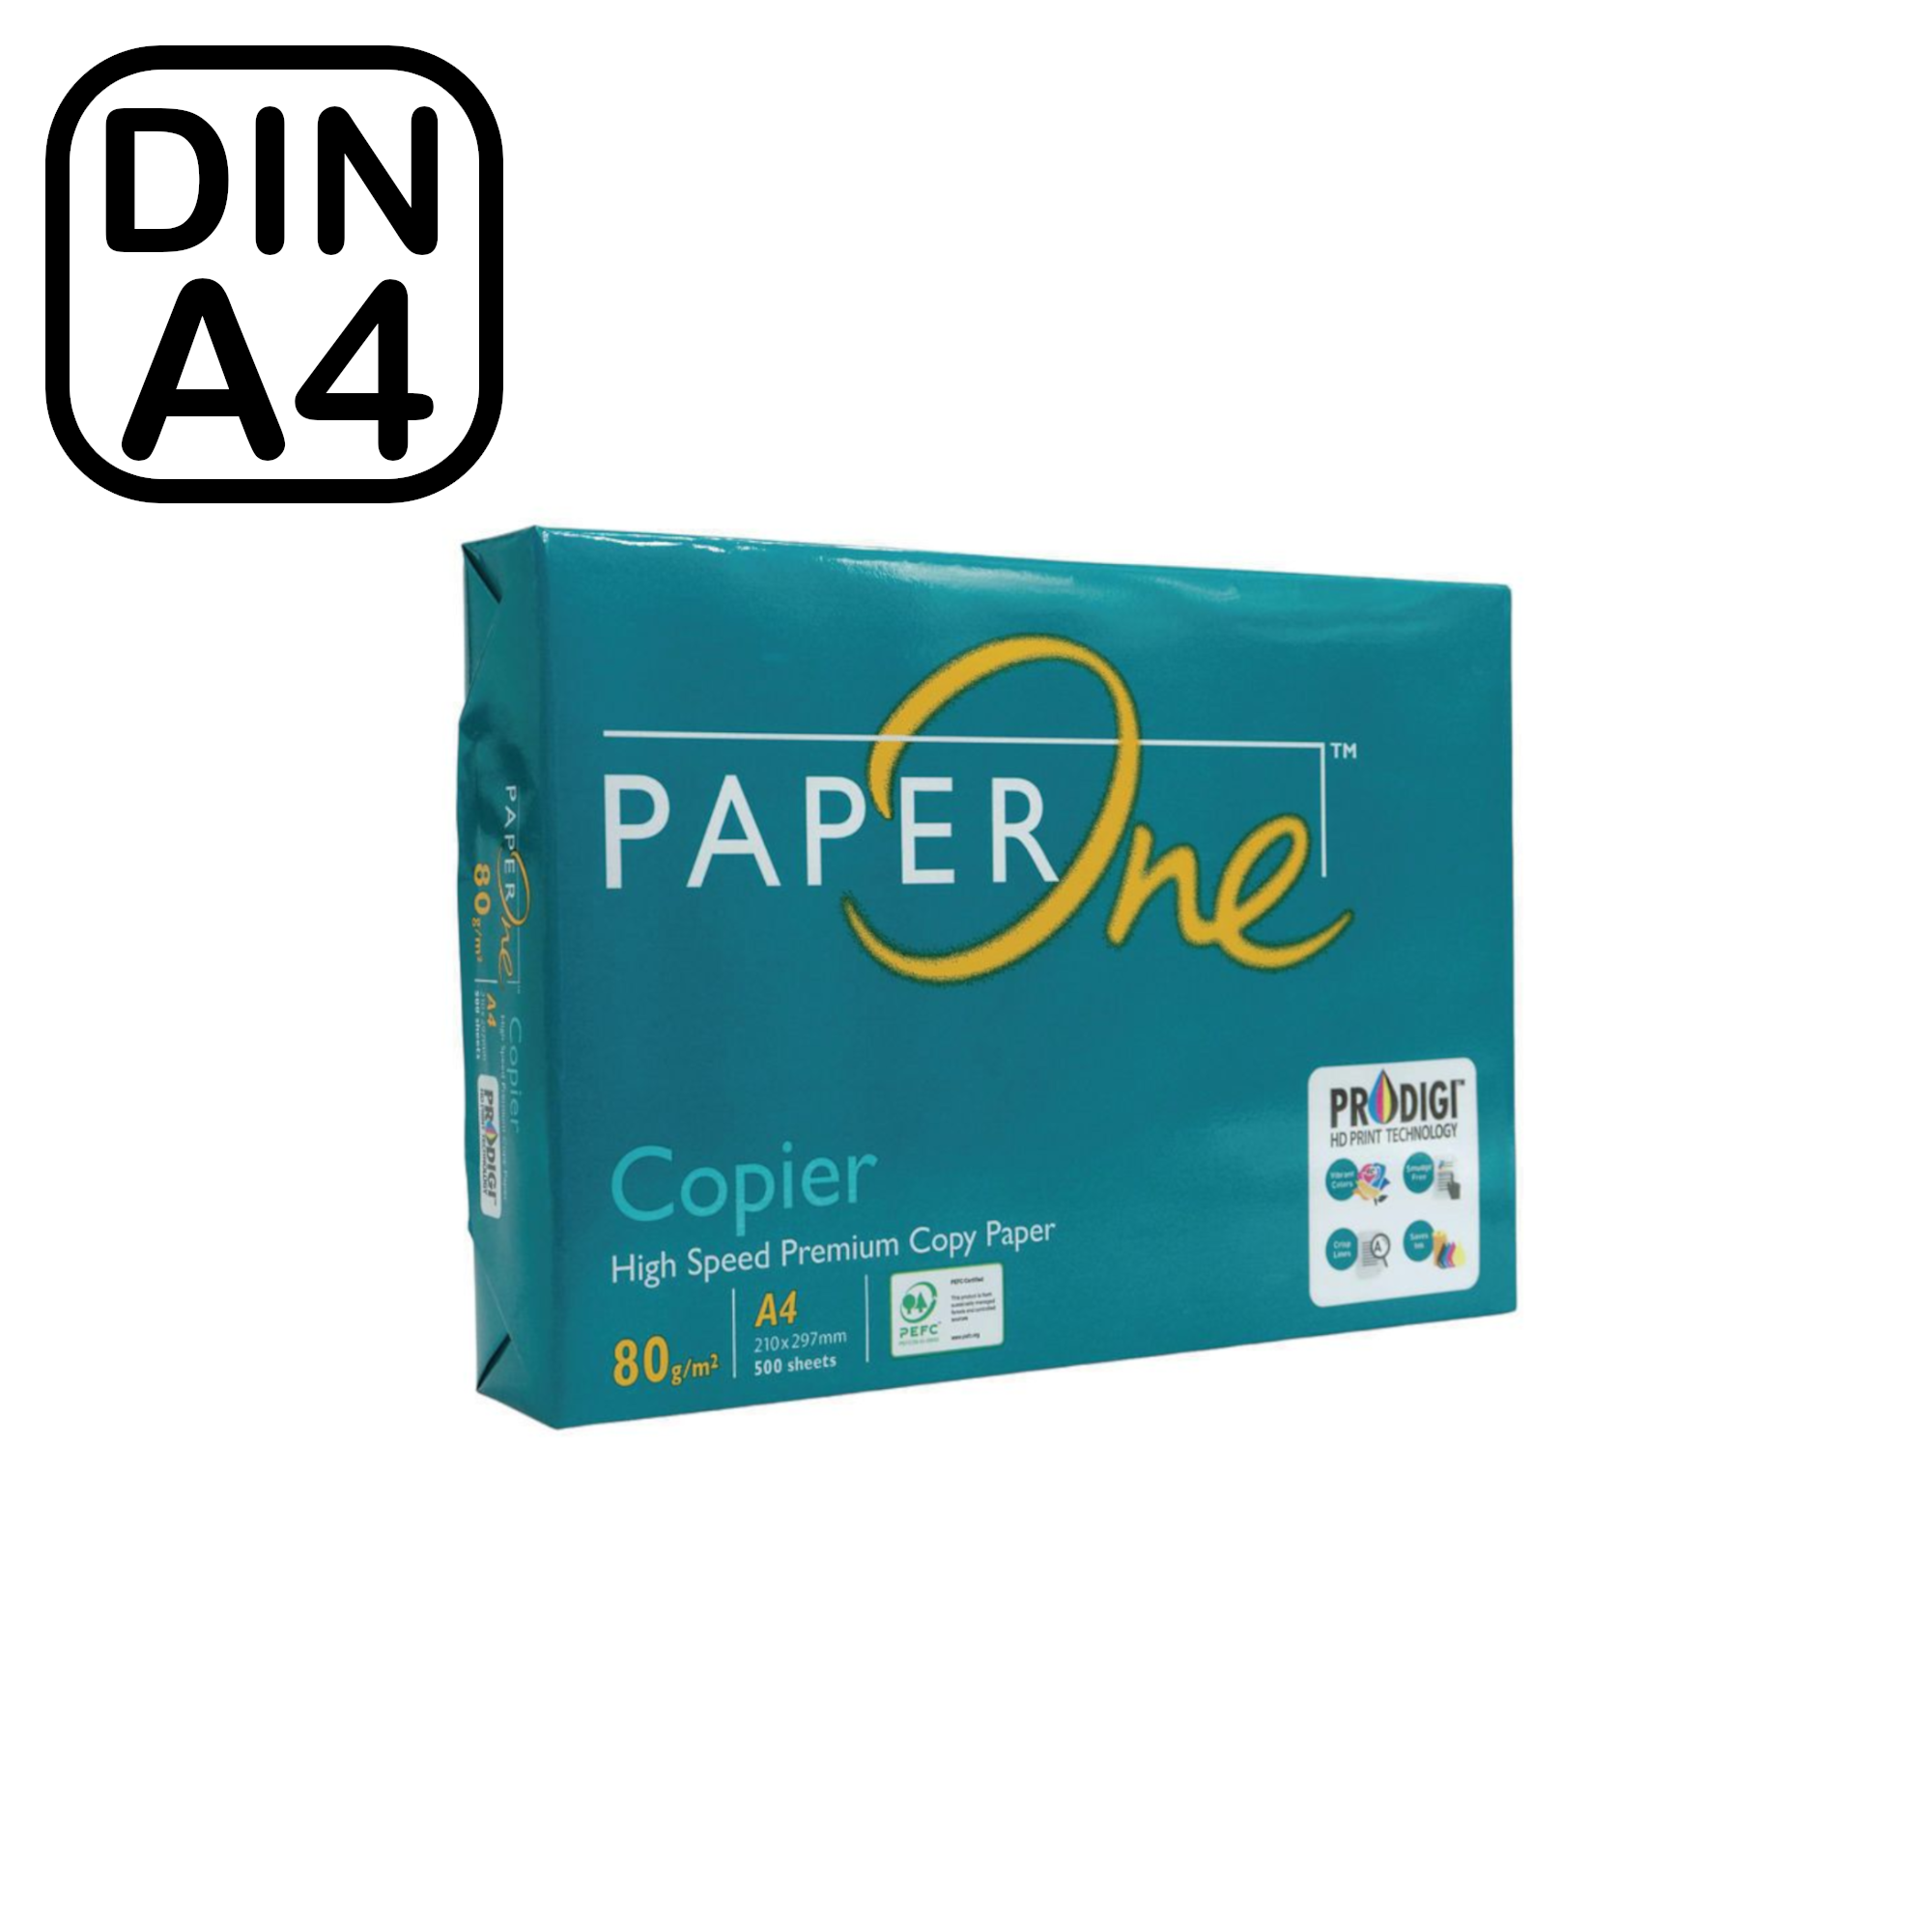 Büropapier/Kopierpapier, DIN A4, 80 g/m², Weiß, 500 Blatt Pack [PAPER ONE]